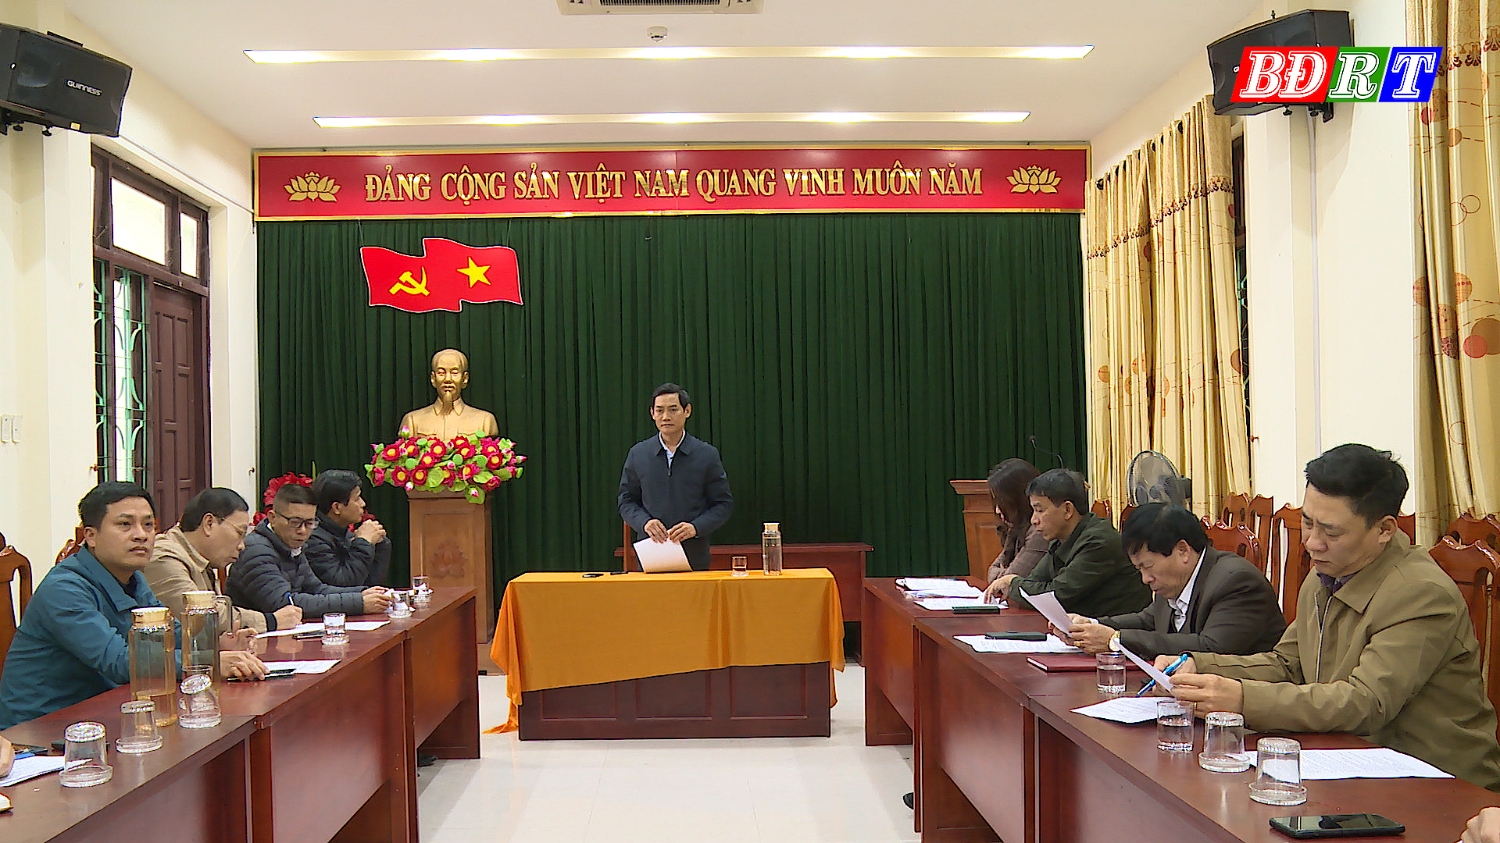 Toàn cảnh buổi họp Ban Tổ chức Hội vật truyền thống thị xã Ba Đồn năm 20023.